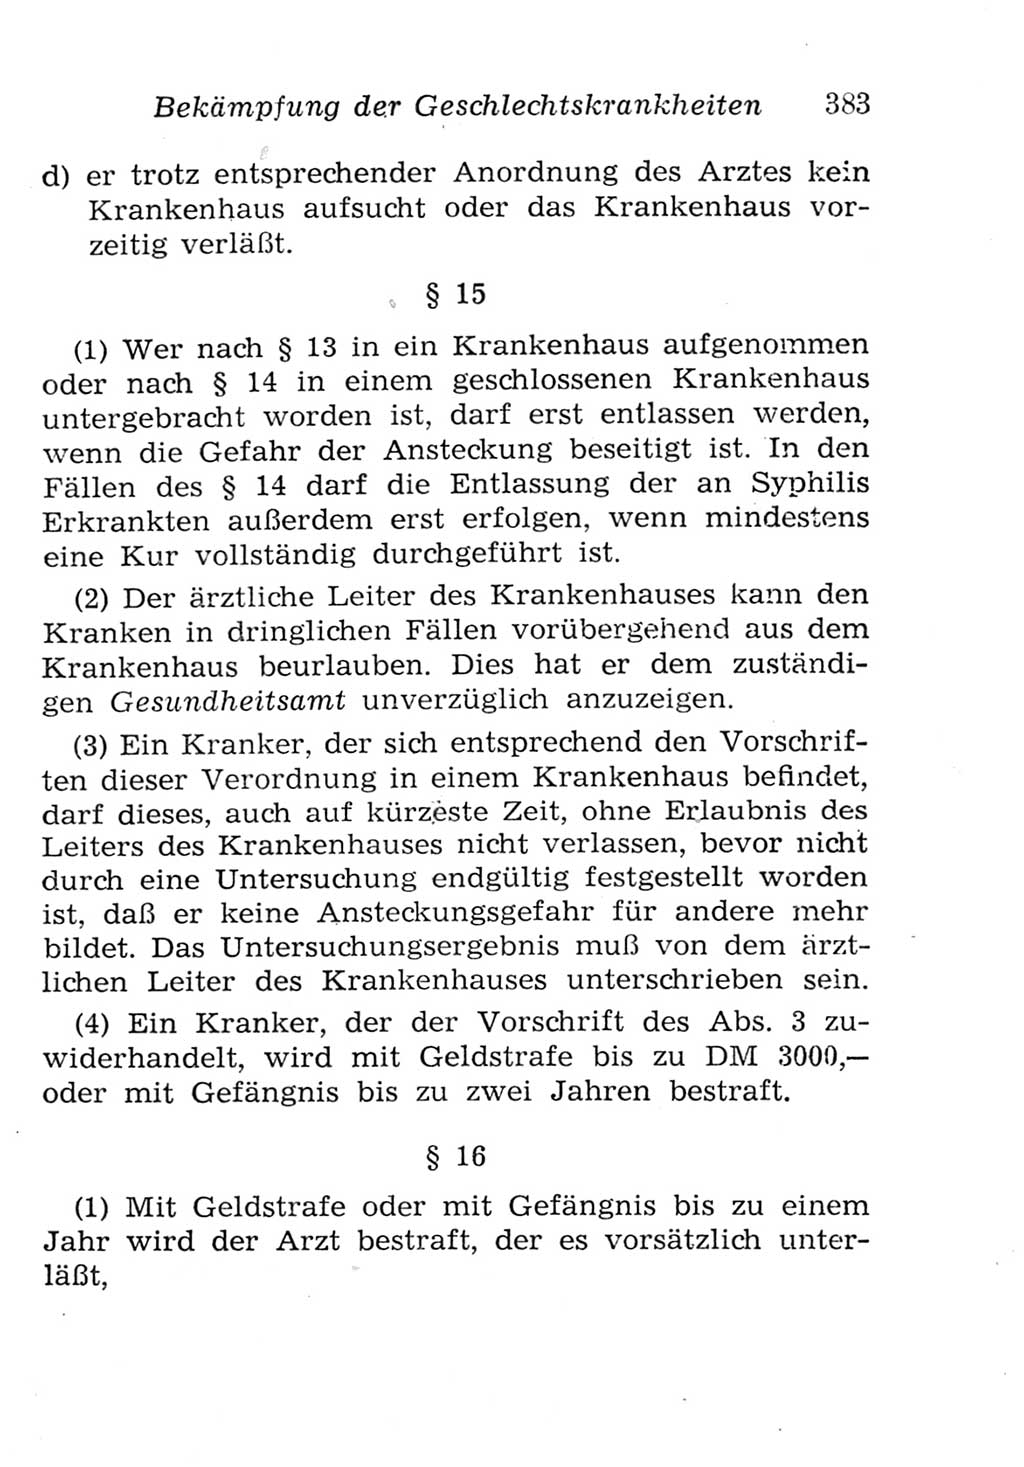 Strafgesetzbuch (StGB) und andere Strafgesetze [Deutsche Demokratische Republik (DDR)] 1957, Seite 383 (StGB Strafges. DDR 1957, S. 383)